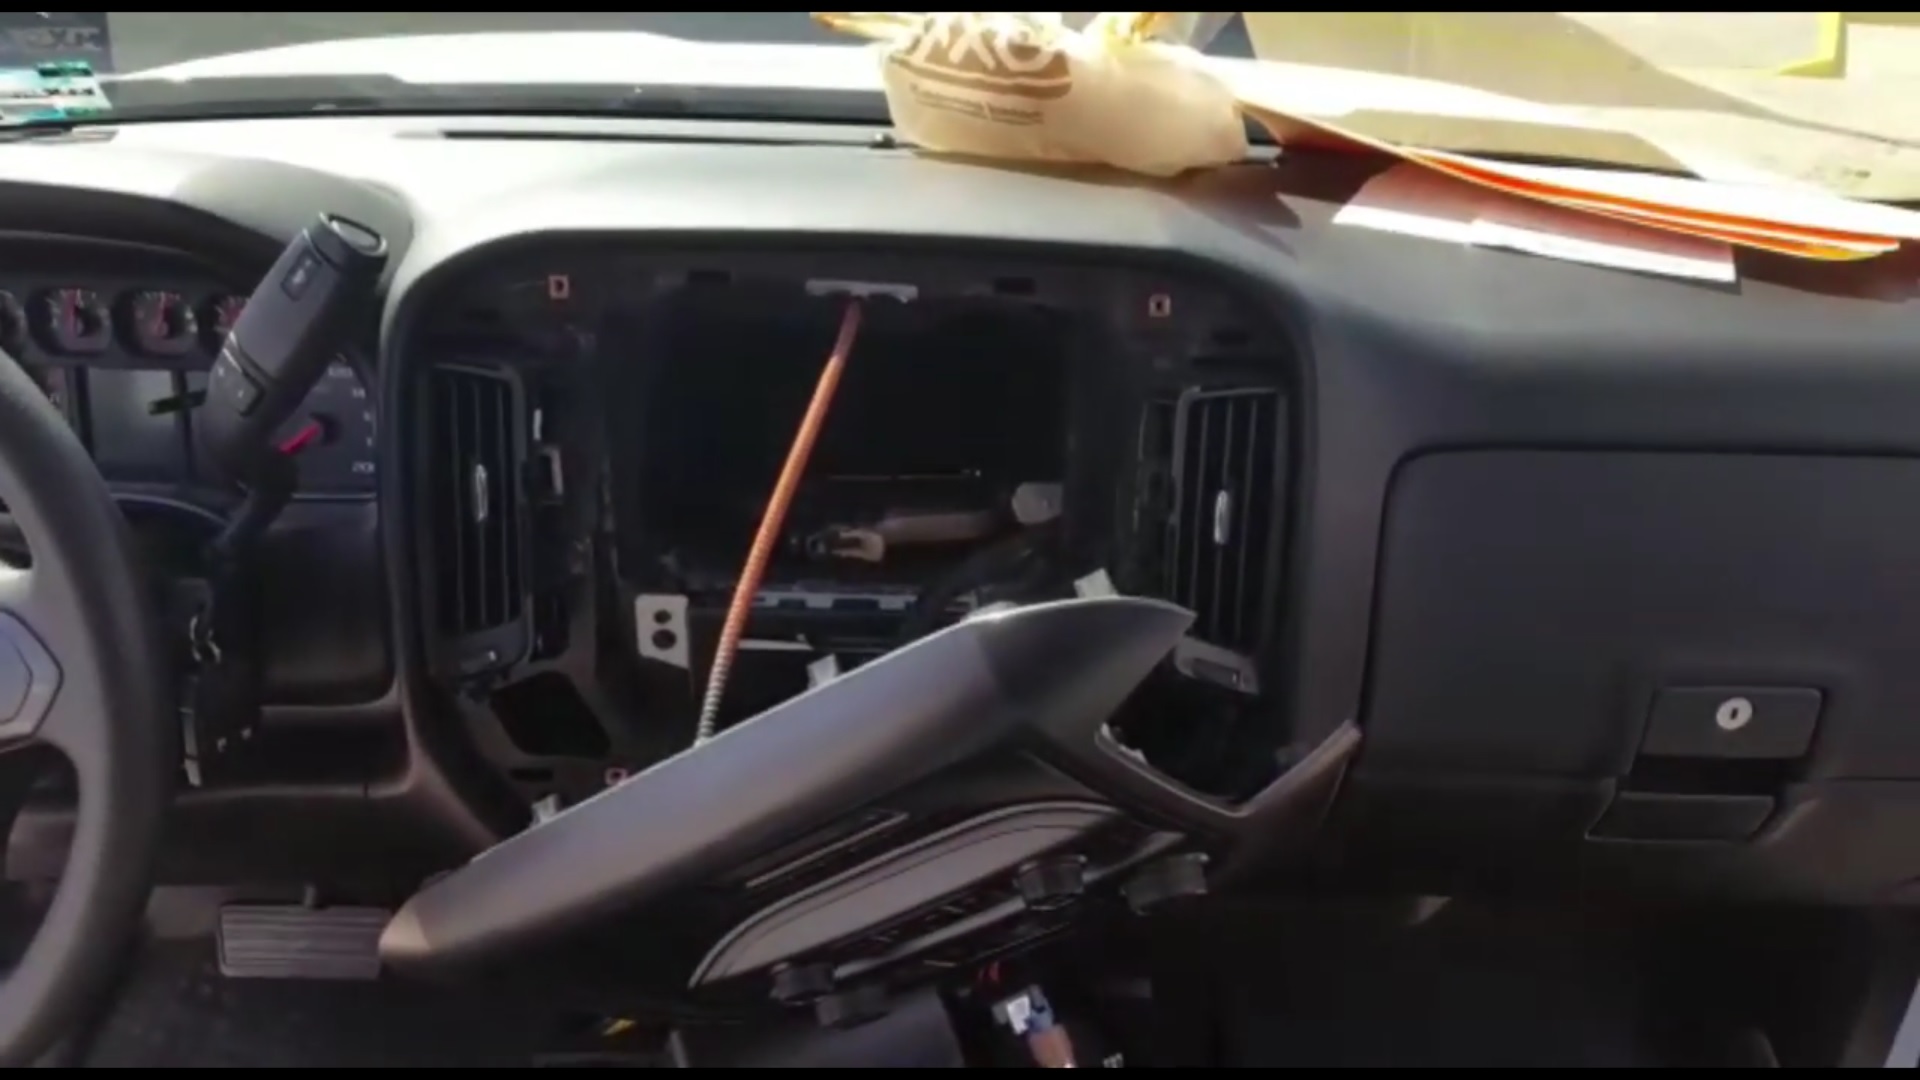 Compartimento oculto en una camioneta donde había dos armas; la Policía Federal realiza el aseguramiento del vehículo en Hermosillo, Sonora (YouTube-Policía Federal)